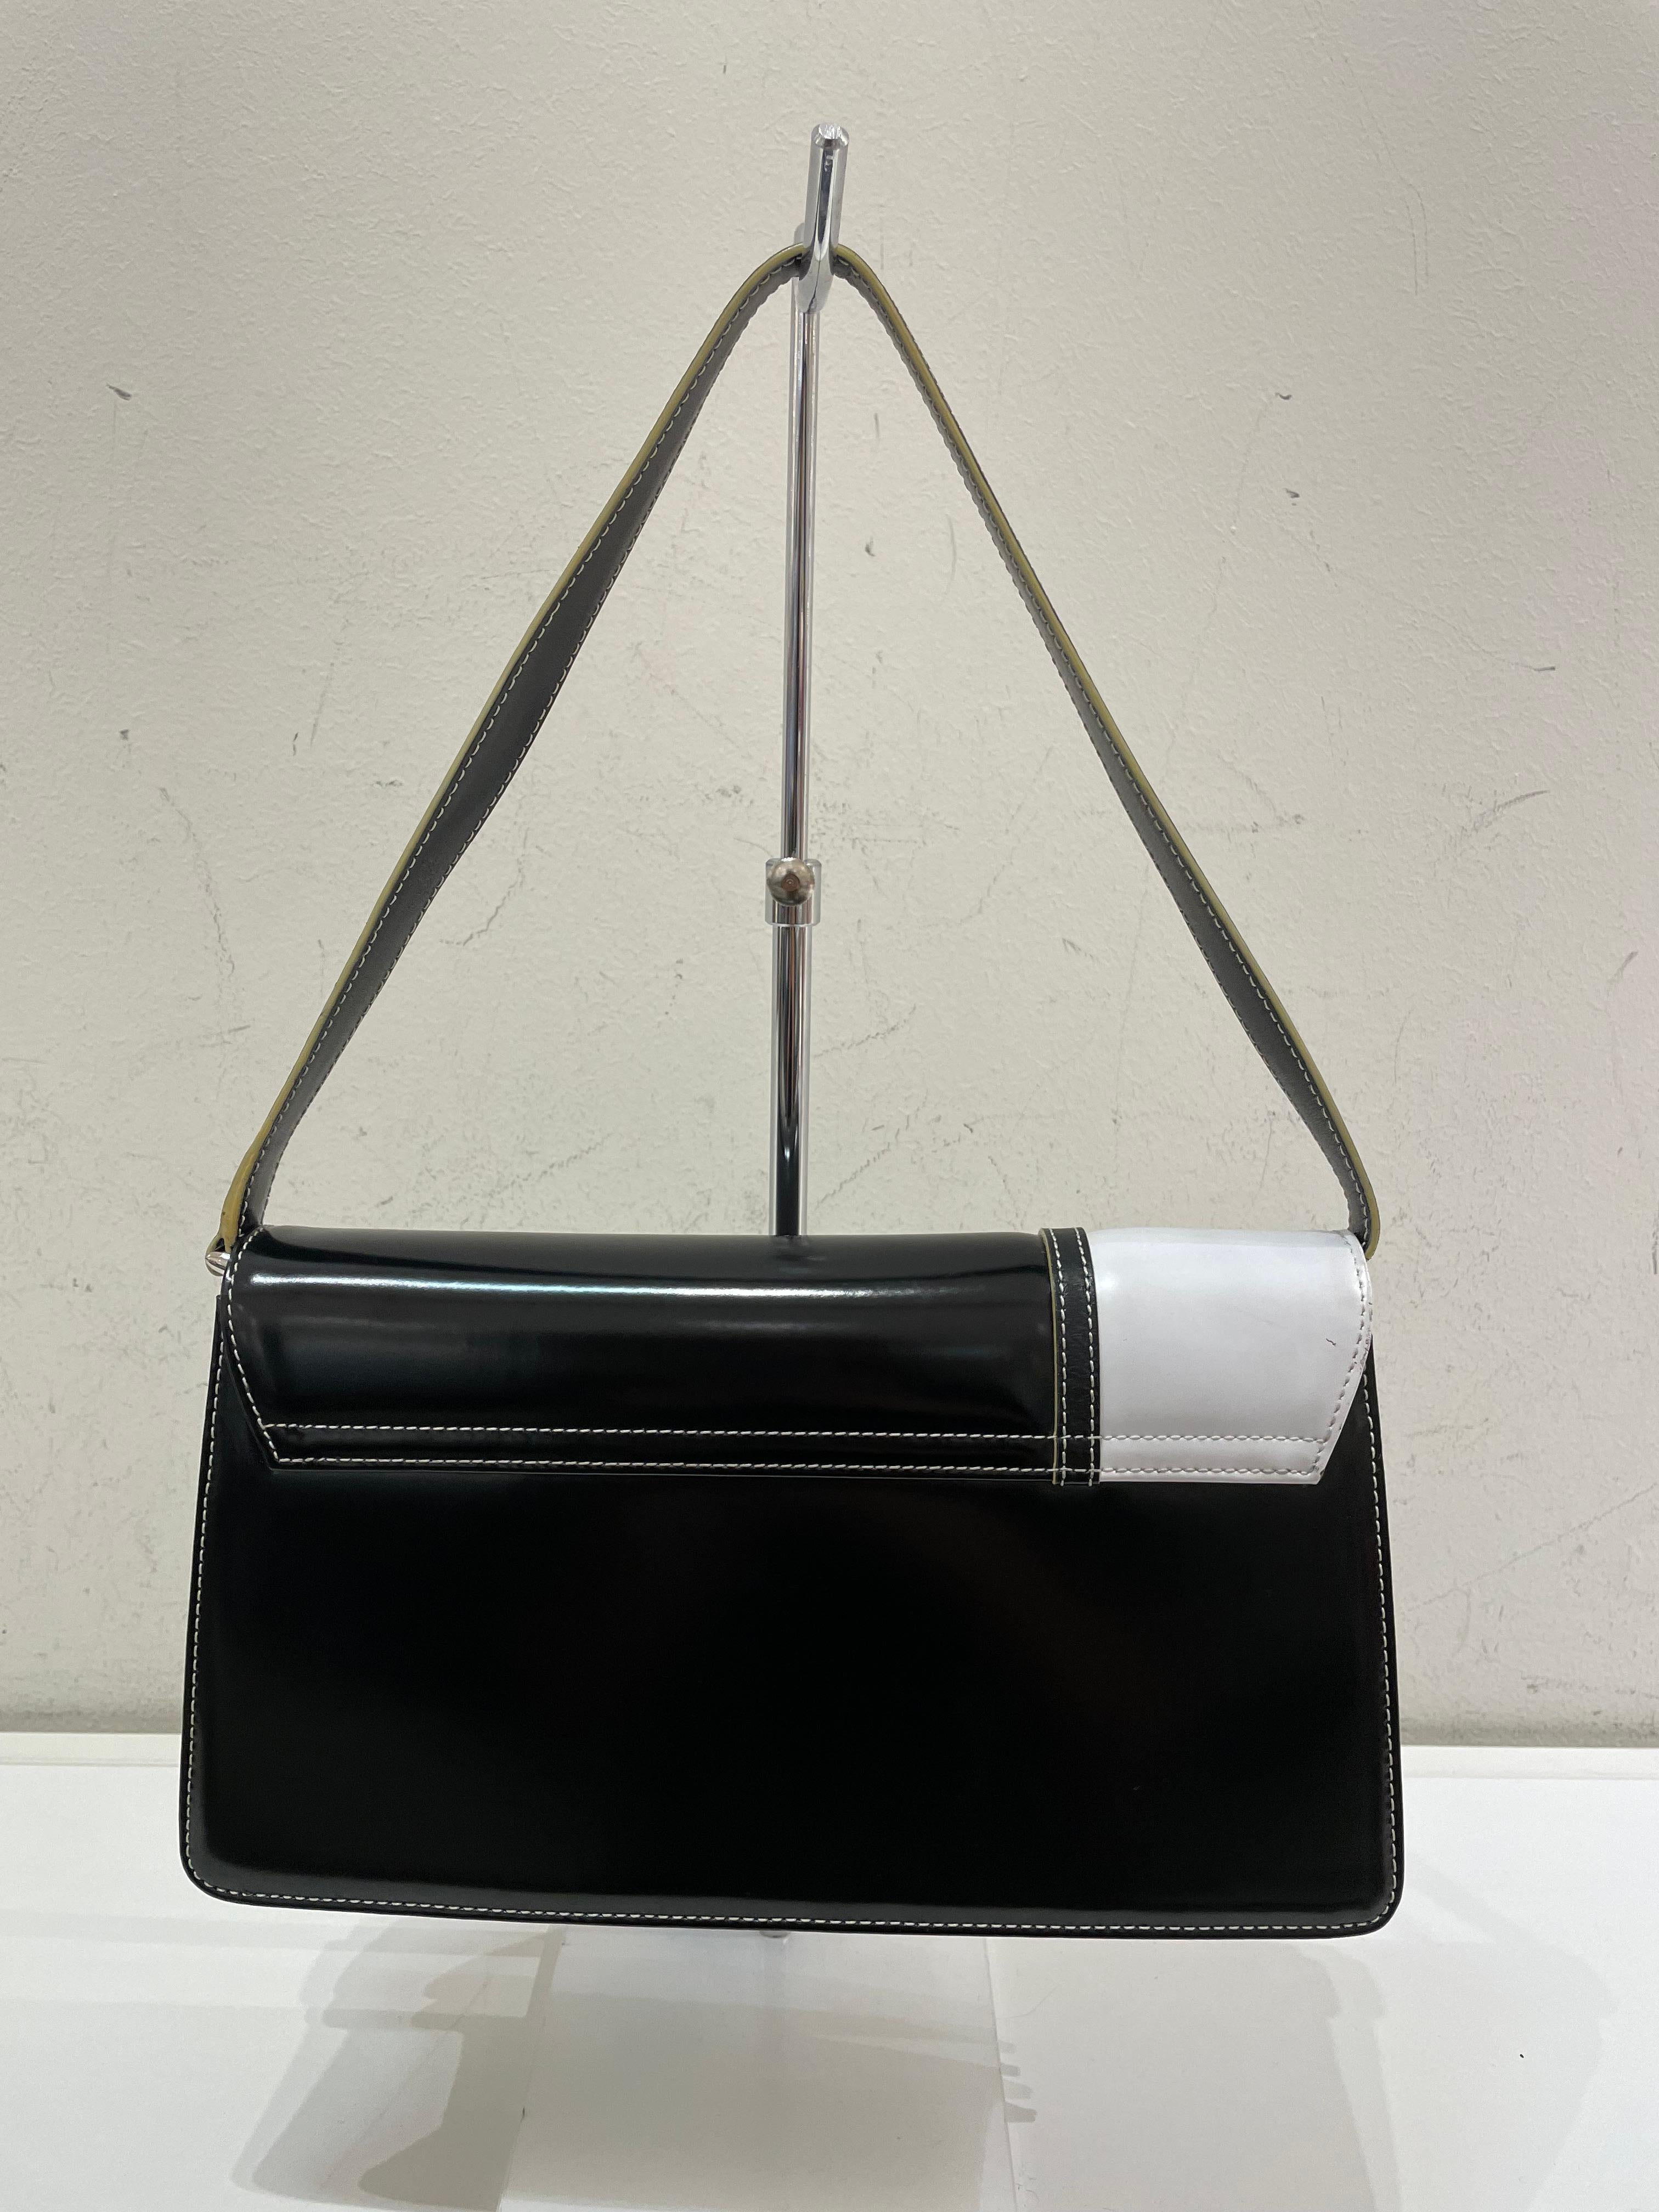 Black Pierre Cardin vintage bag.